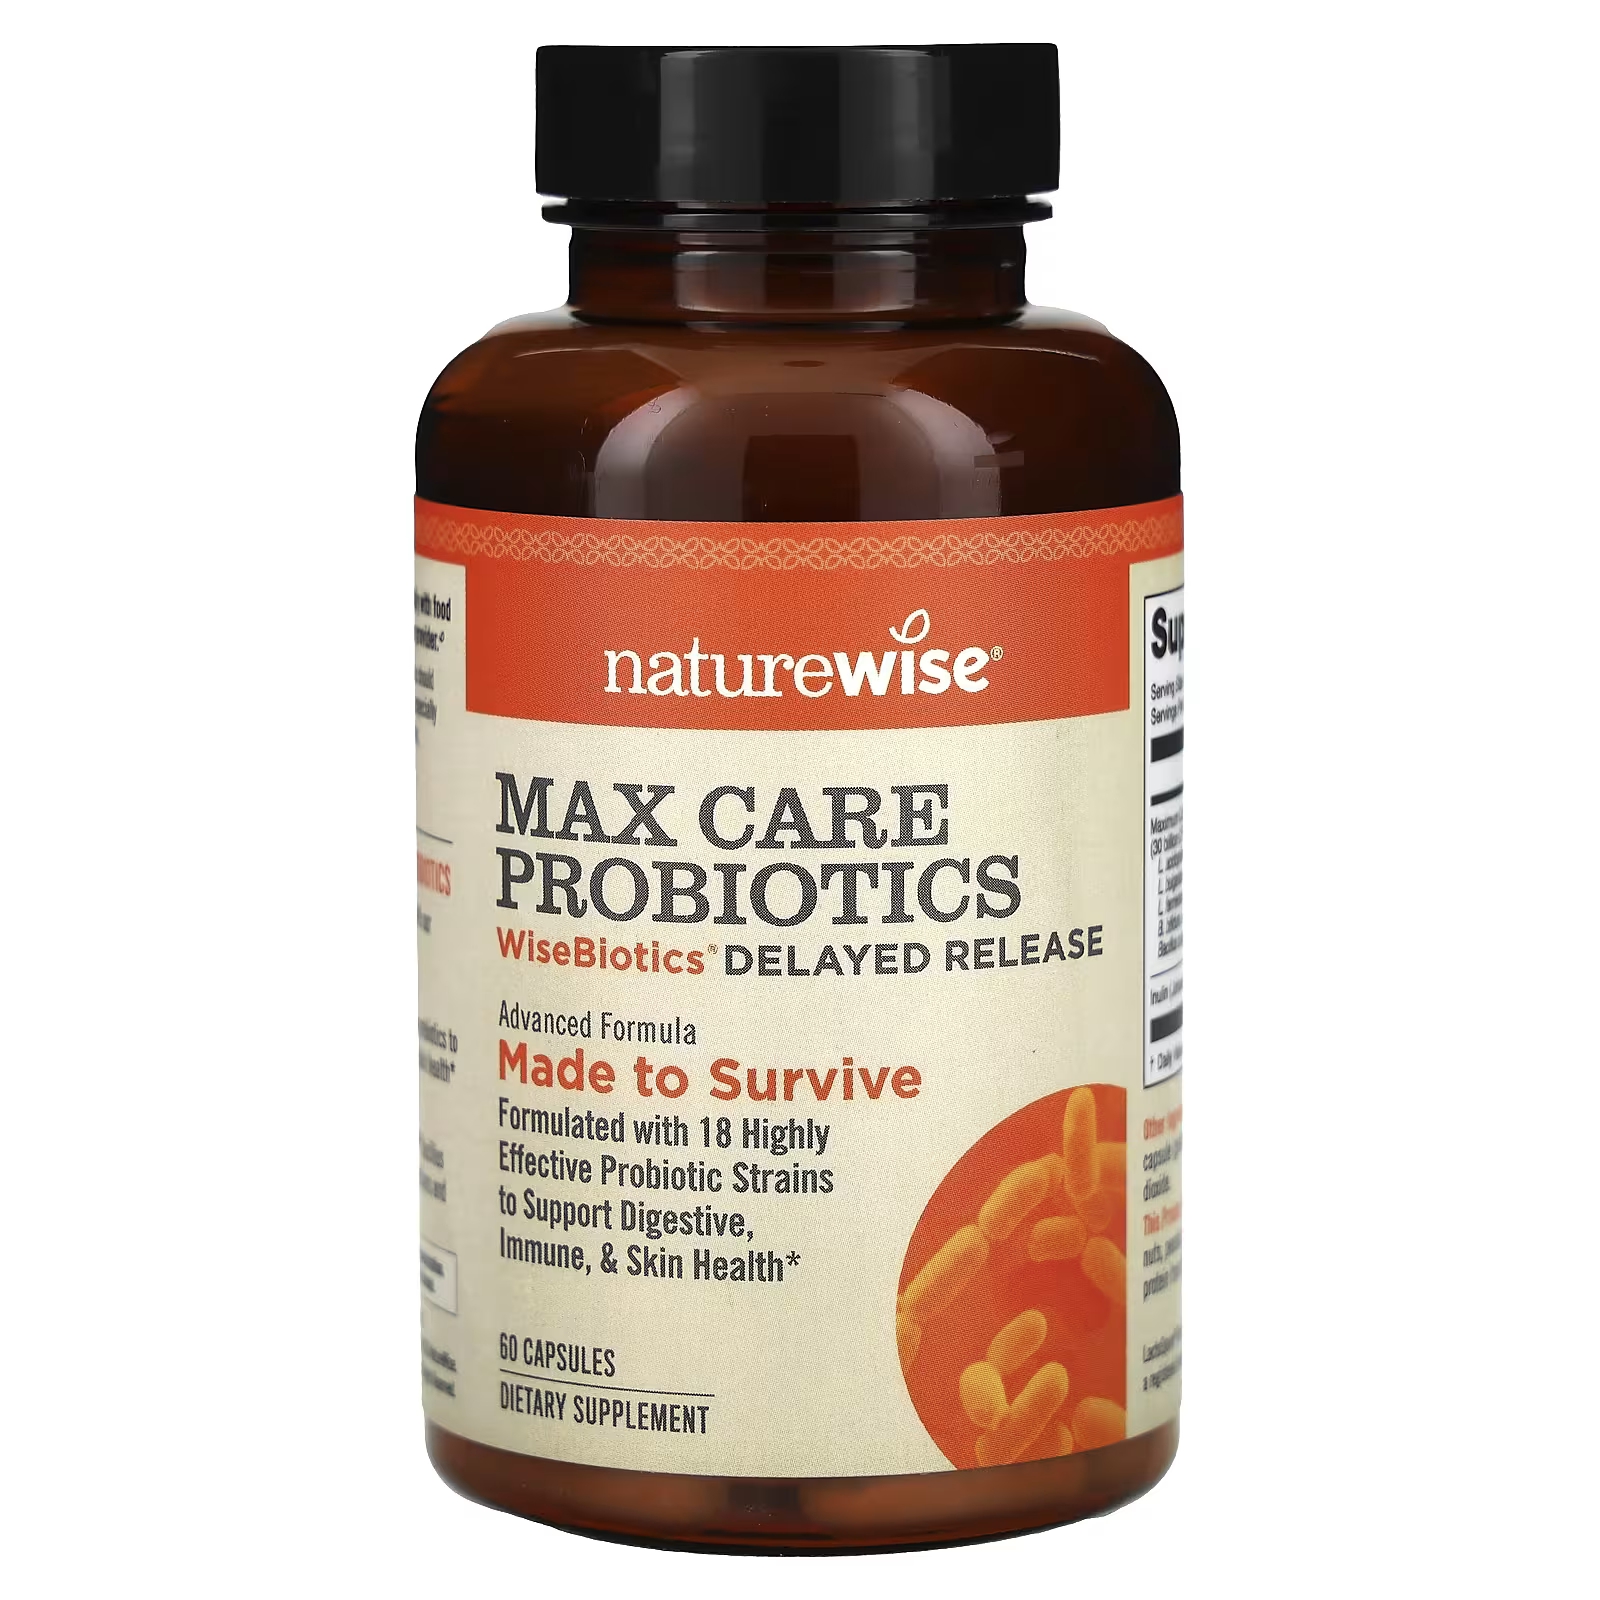 NatureWise Max Care Пробиотики WiseBiotics с отсроченным высвобождением, 60 капсул naturewise maximum care пробиотики с замедленным высвобождением 40 капсул